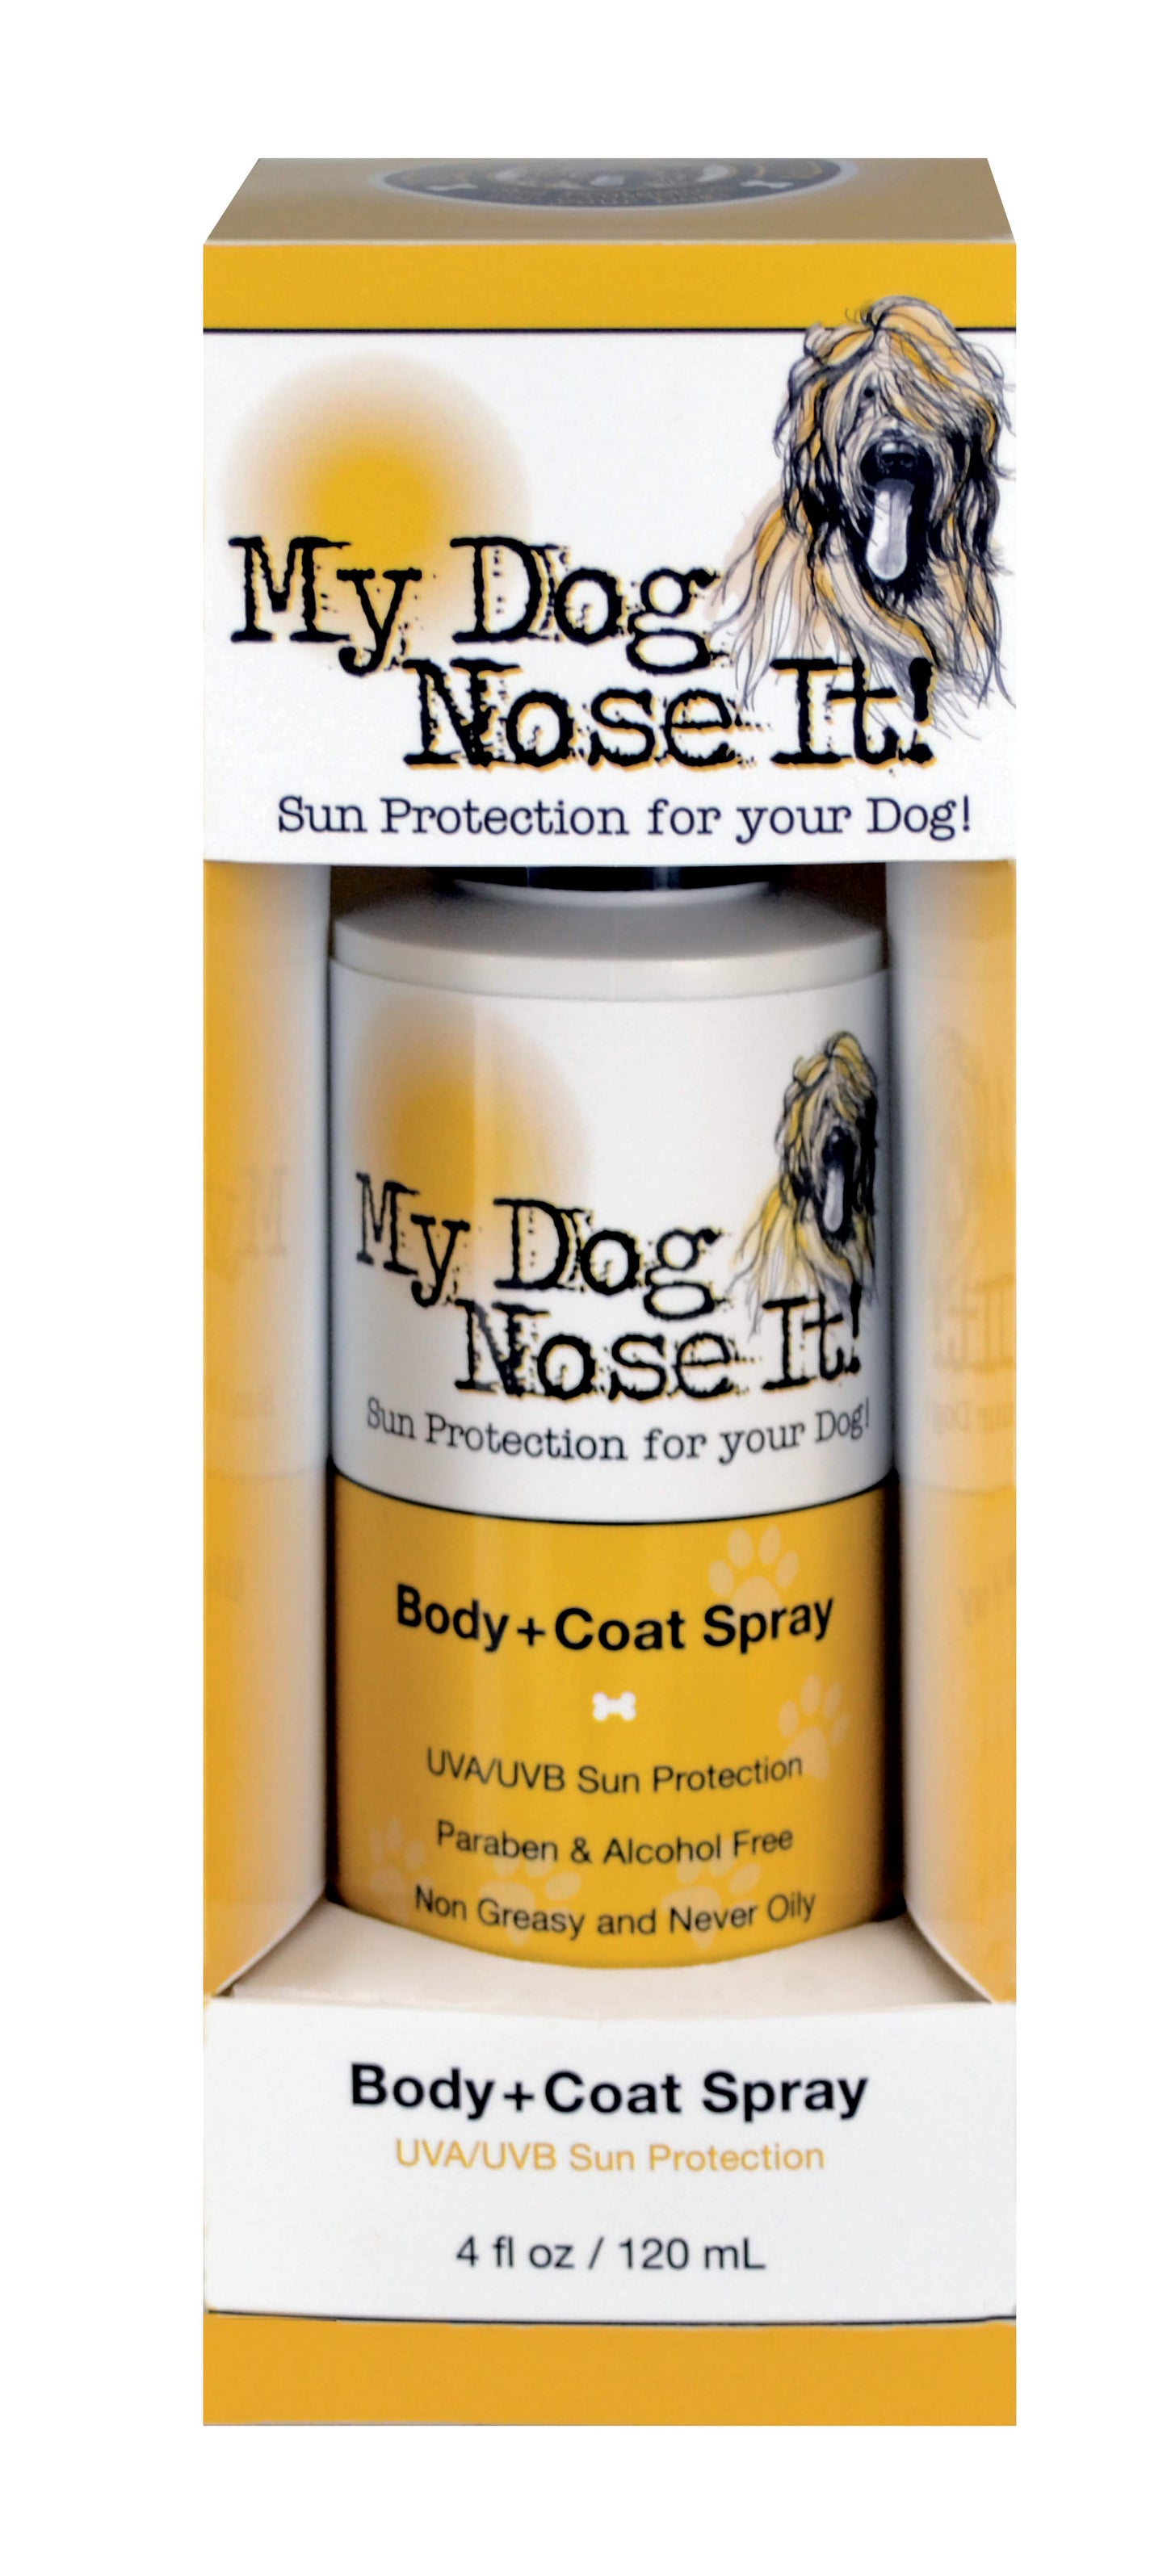 My Dog Nose It Body + Coat Spray